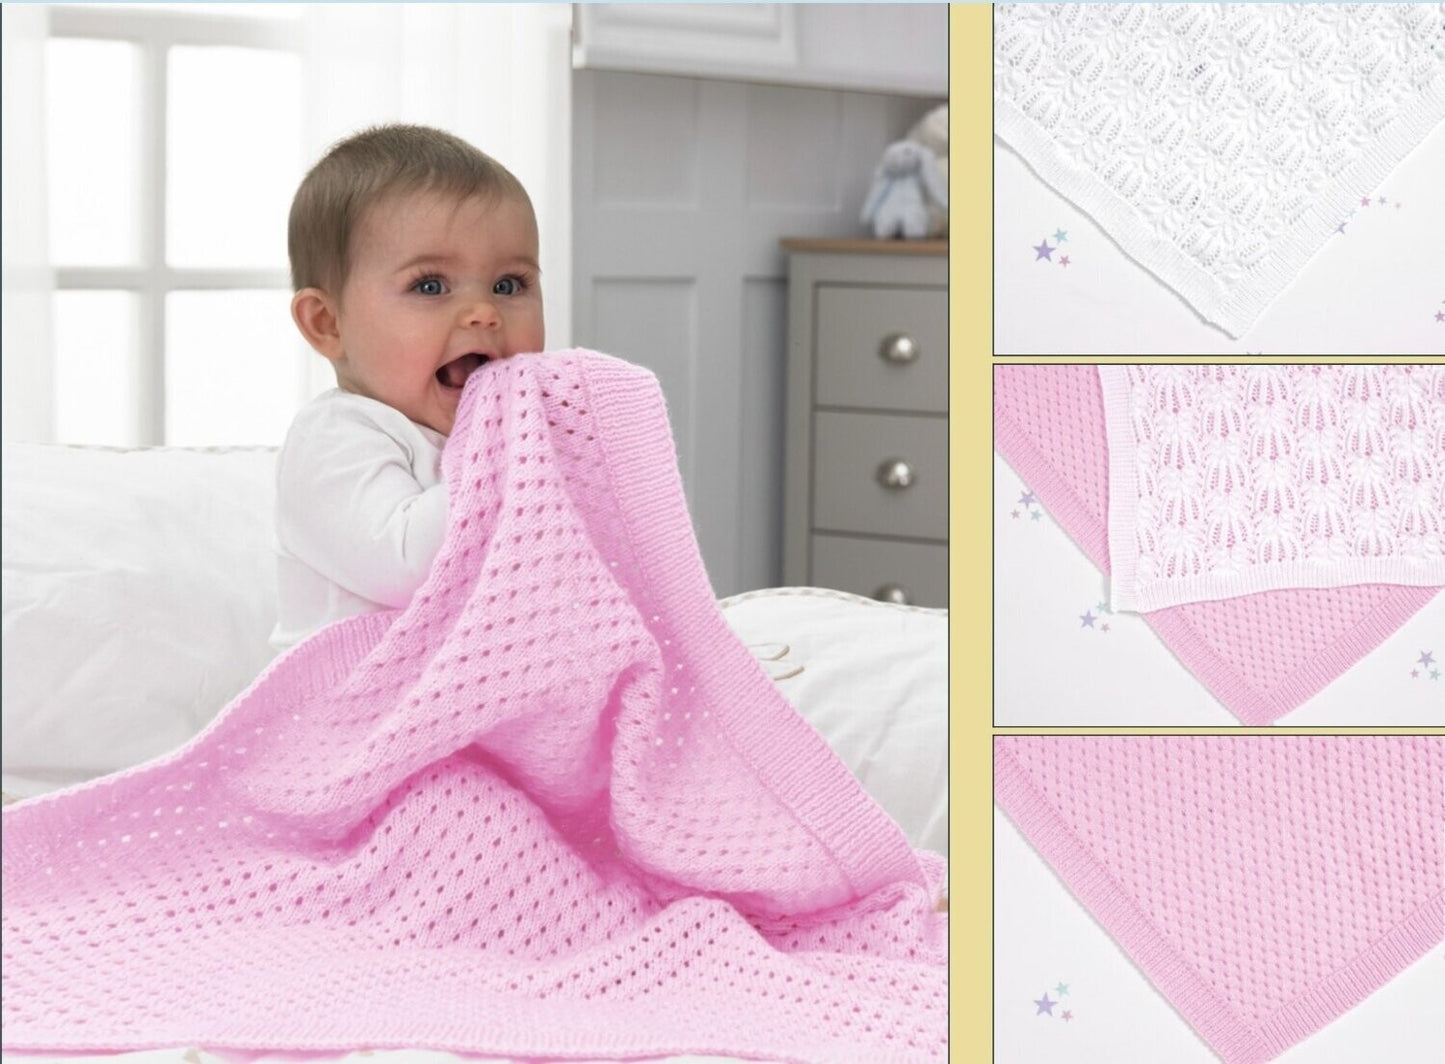 Baby Blanket 4 Ply Knitting Pattern - Peter Pan PP029